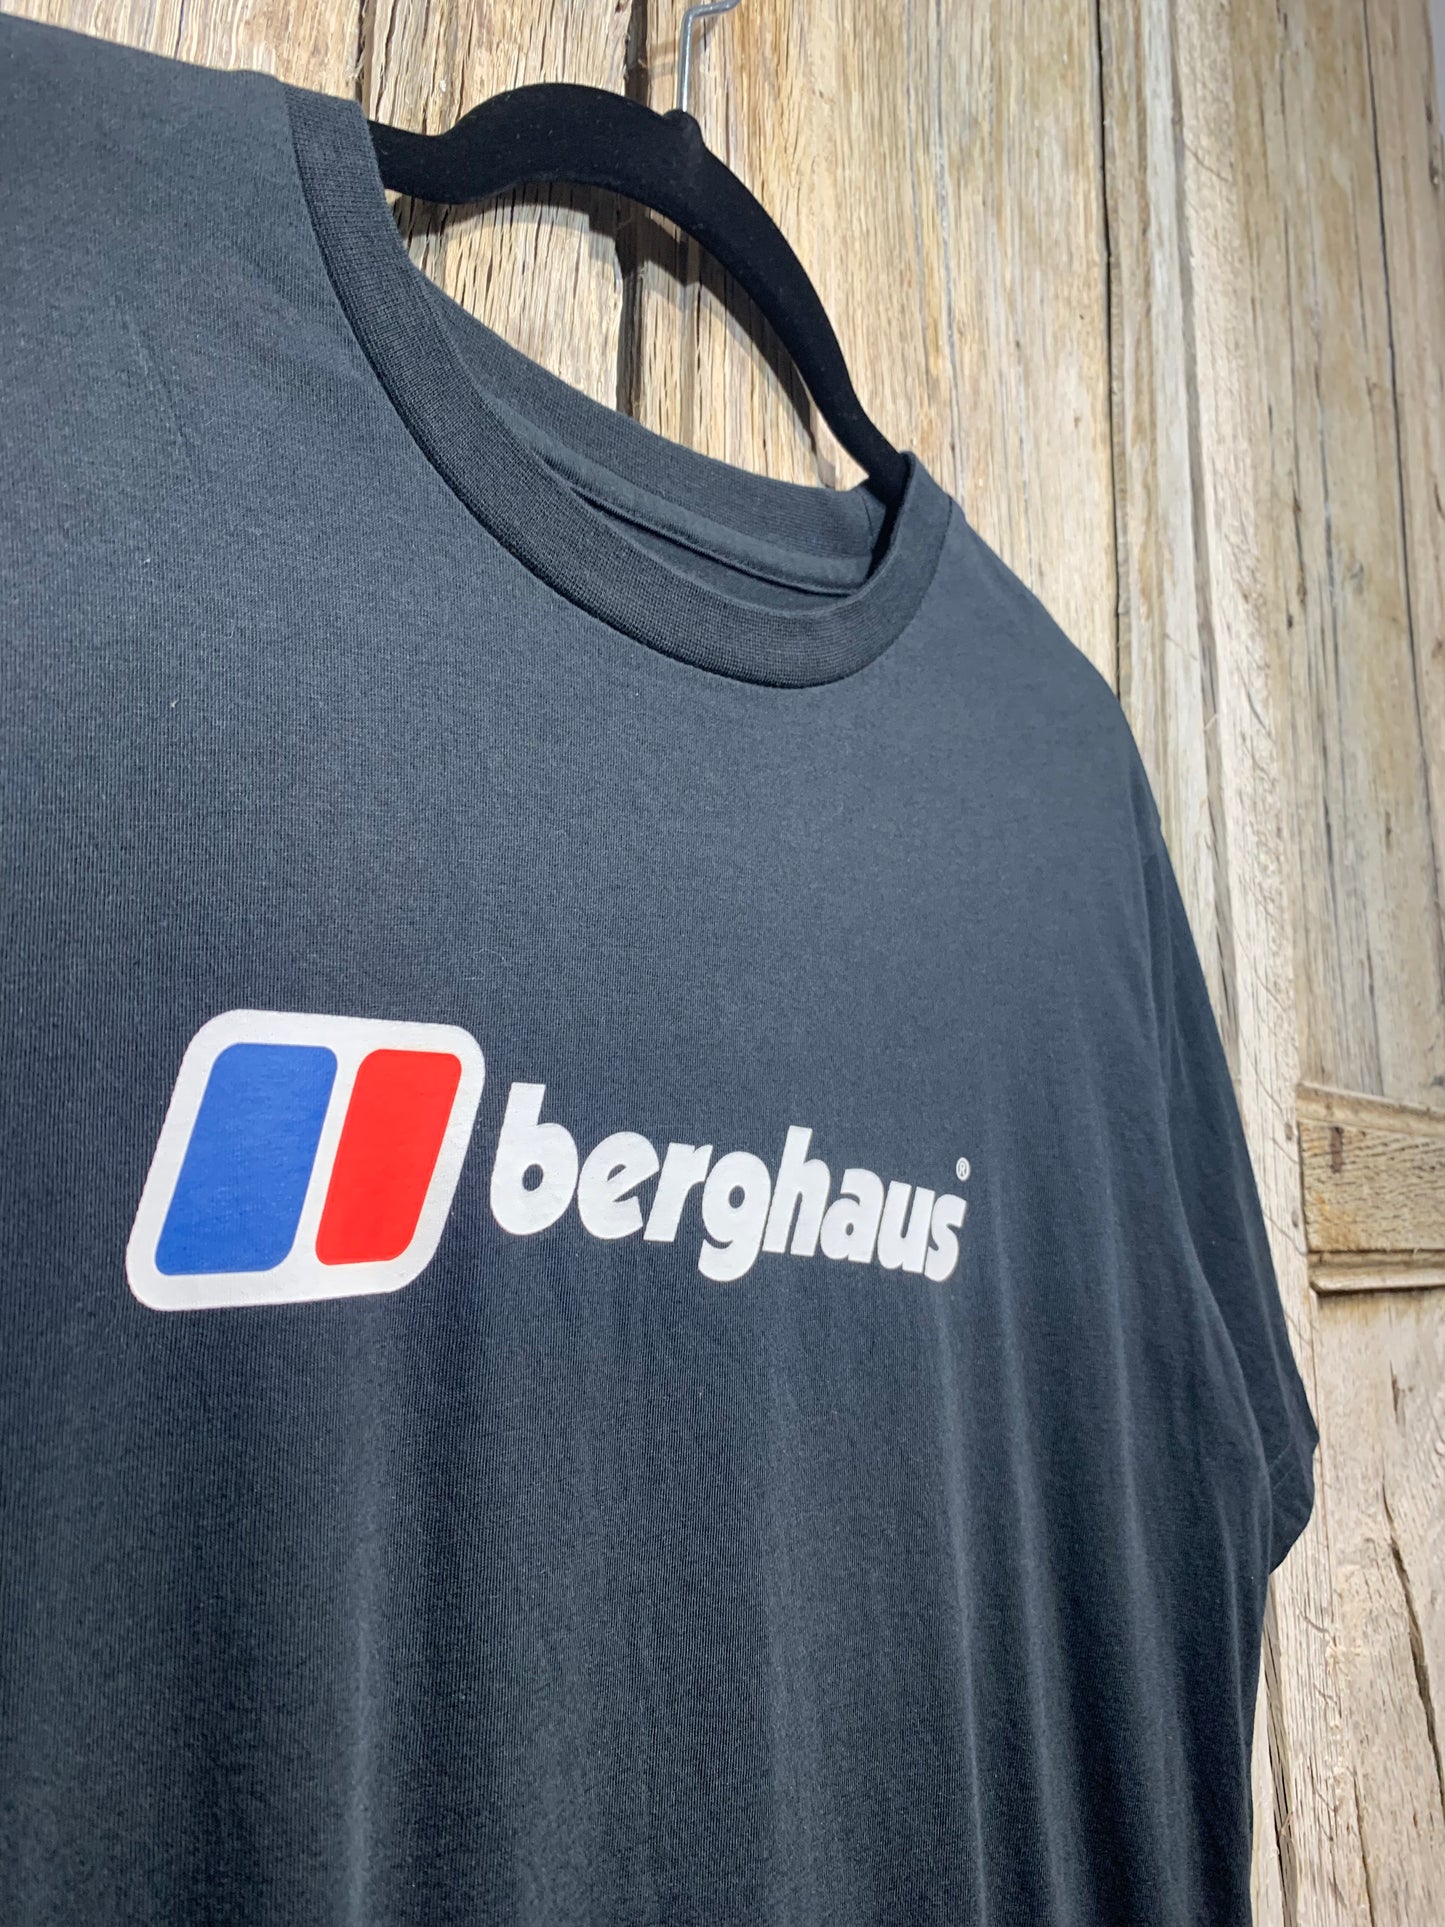 Black Berghaus Logo Tee